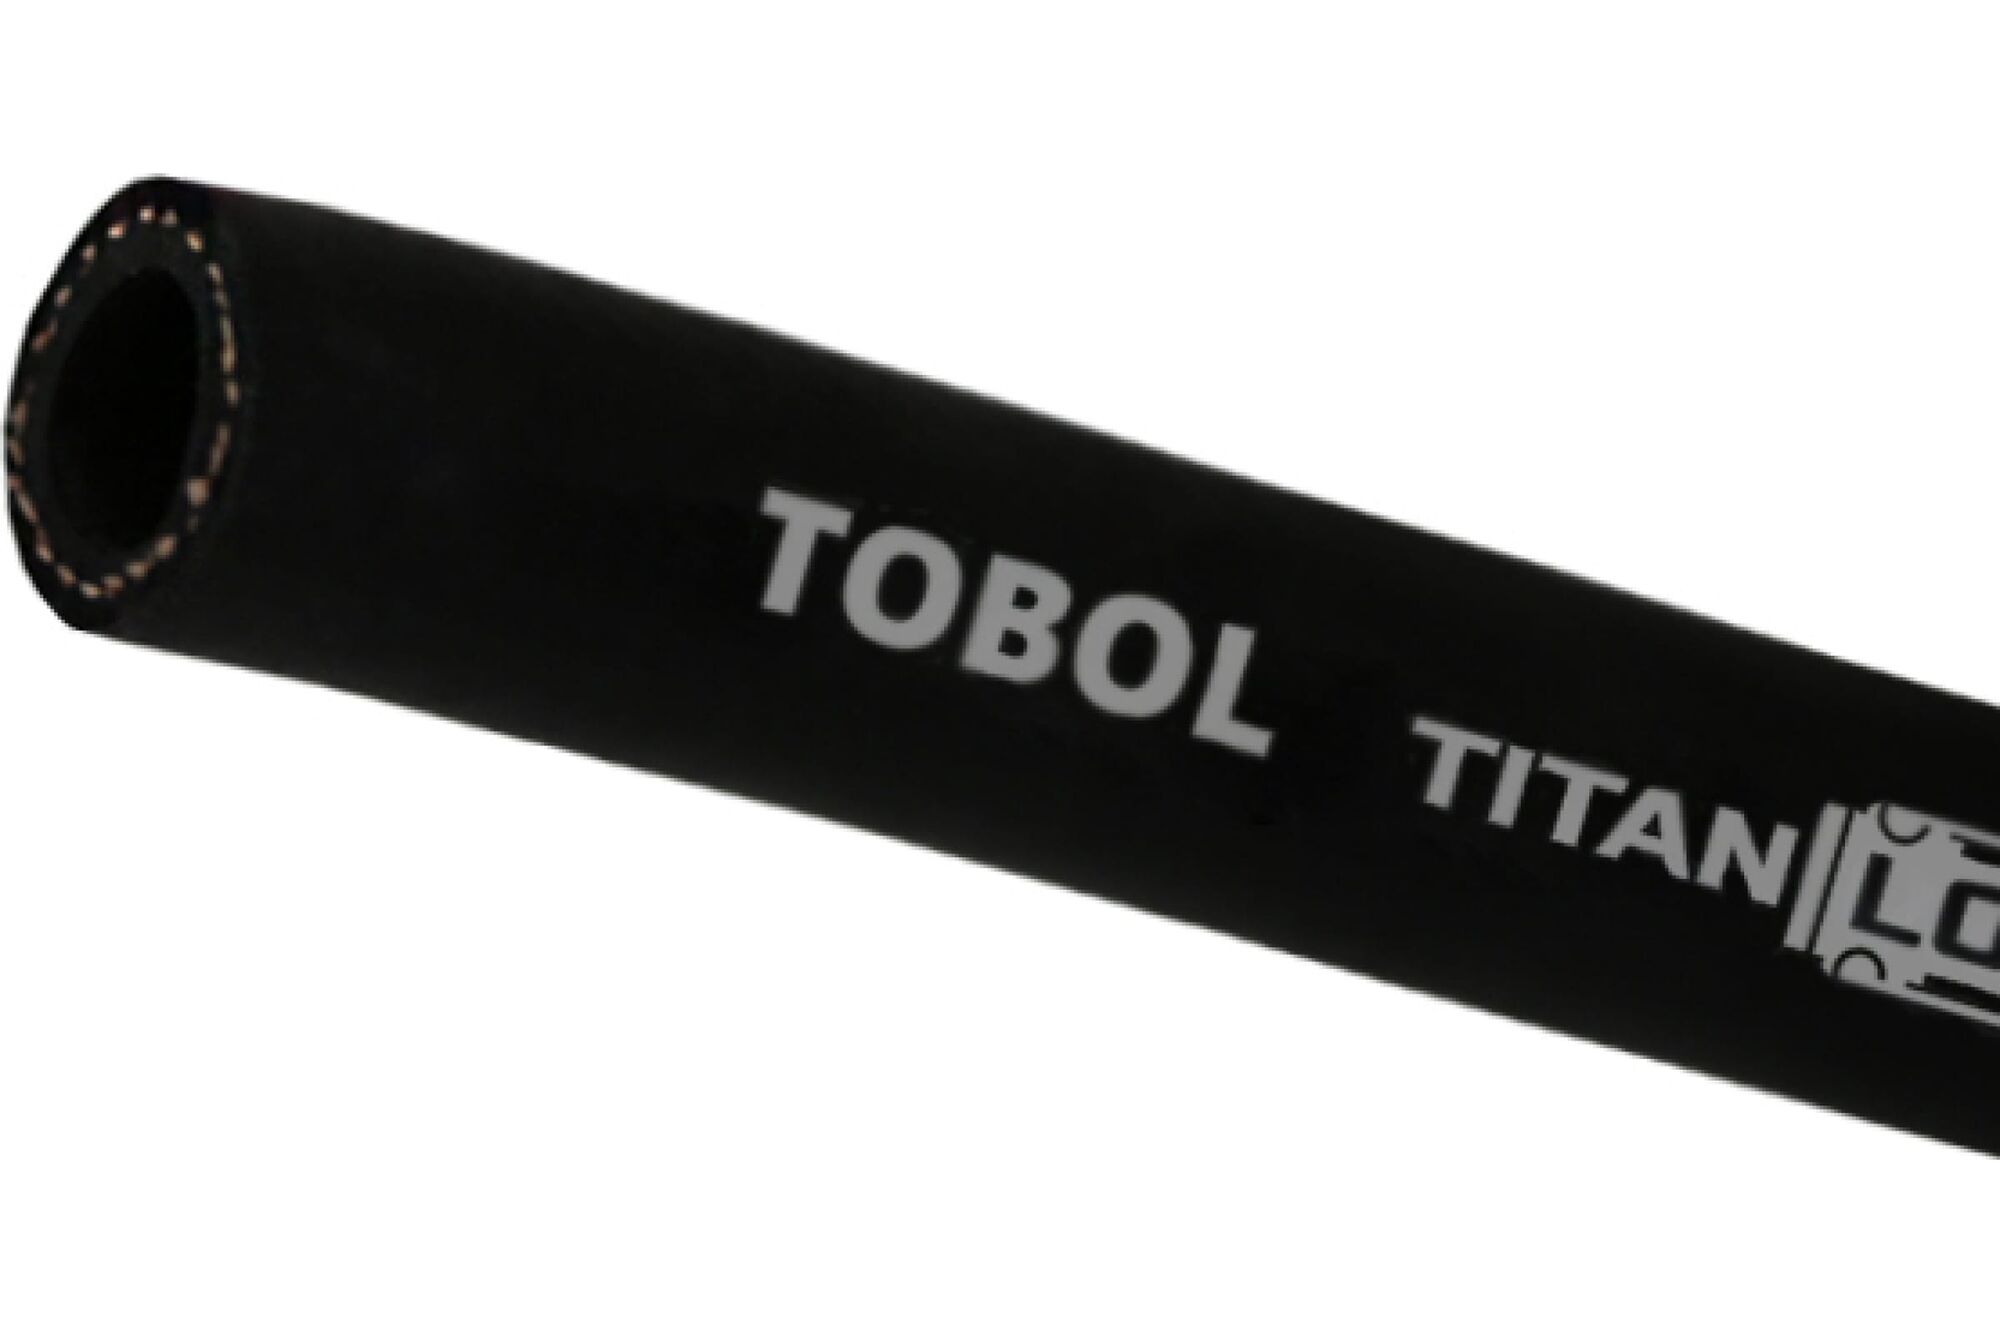 Маслобензостойкий напорный рукав TITAN LOCK TOBOL, 20 Бар, внутренний диаметр 16 мм., TL016TB 10 м.